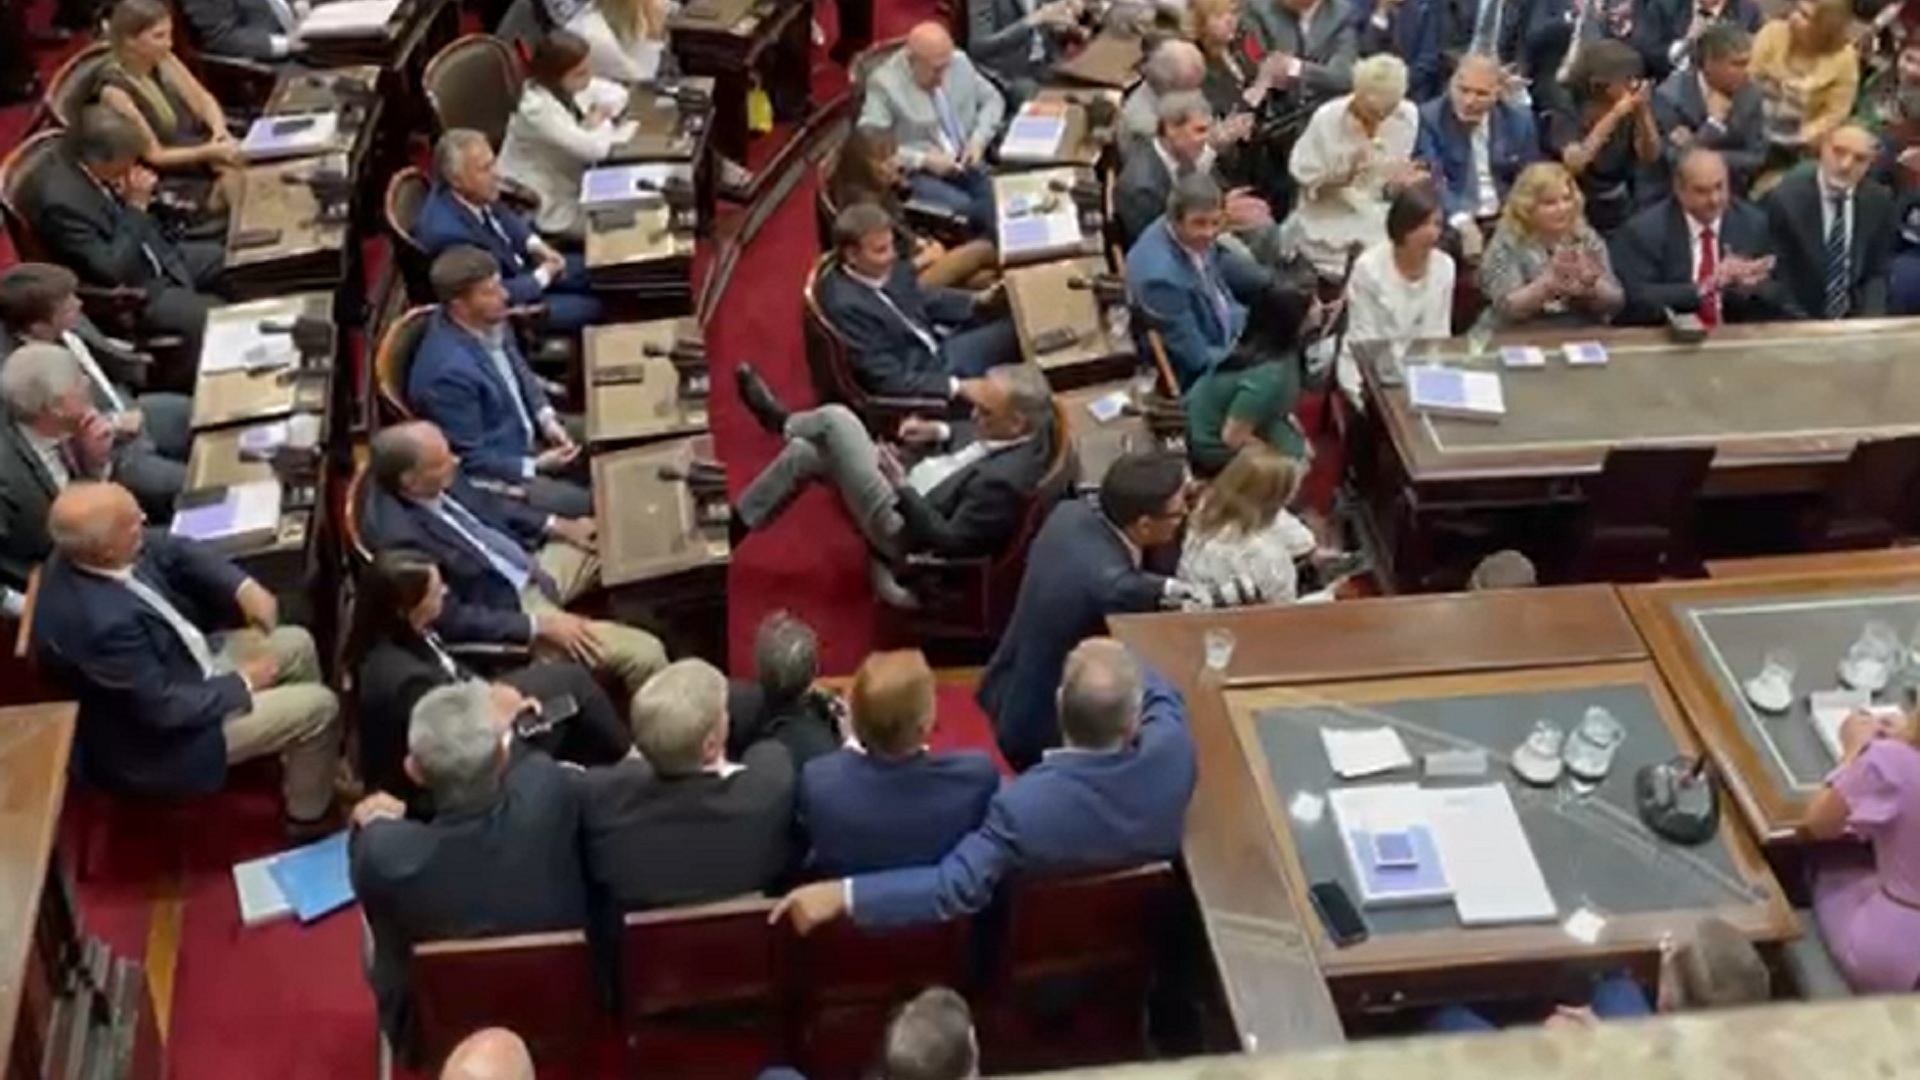 Cánticos irónicos, insultos y sillas vacías: lo que no se vio de la Asamblea Legislativa 